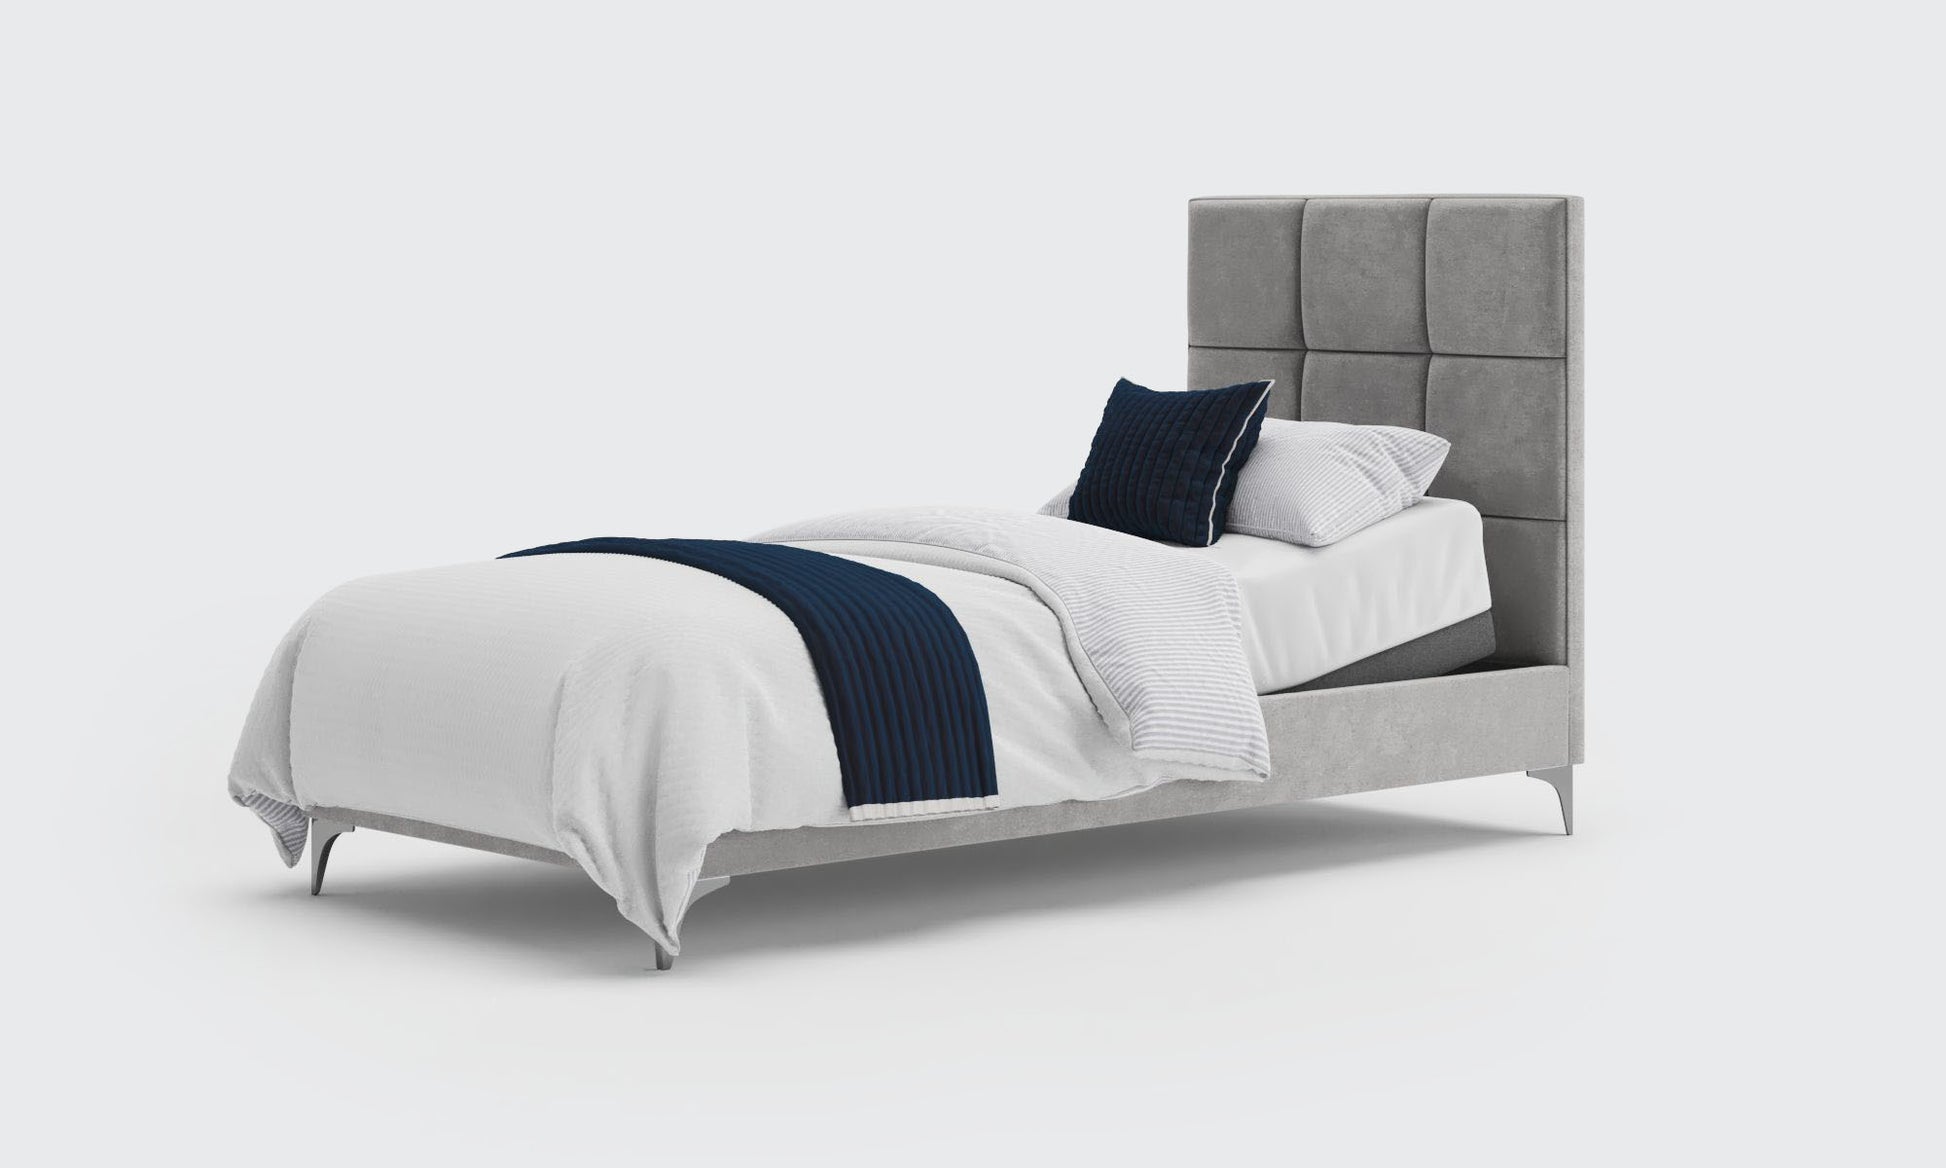 borg 3ft single bed and mattress in the cedar velvet material